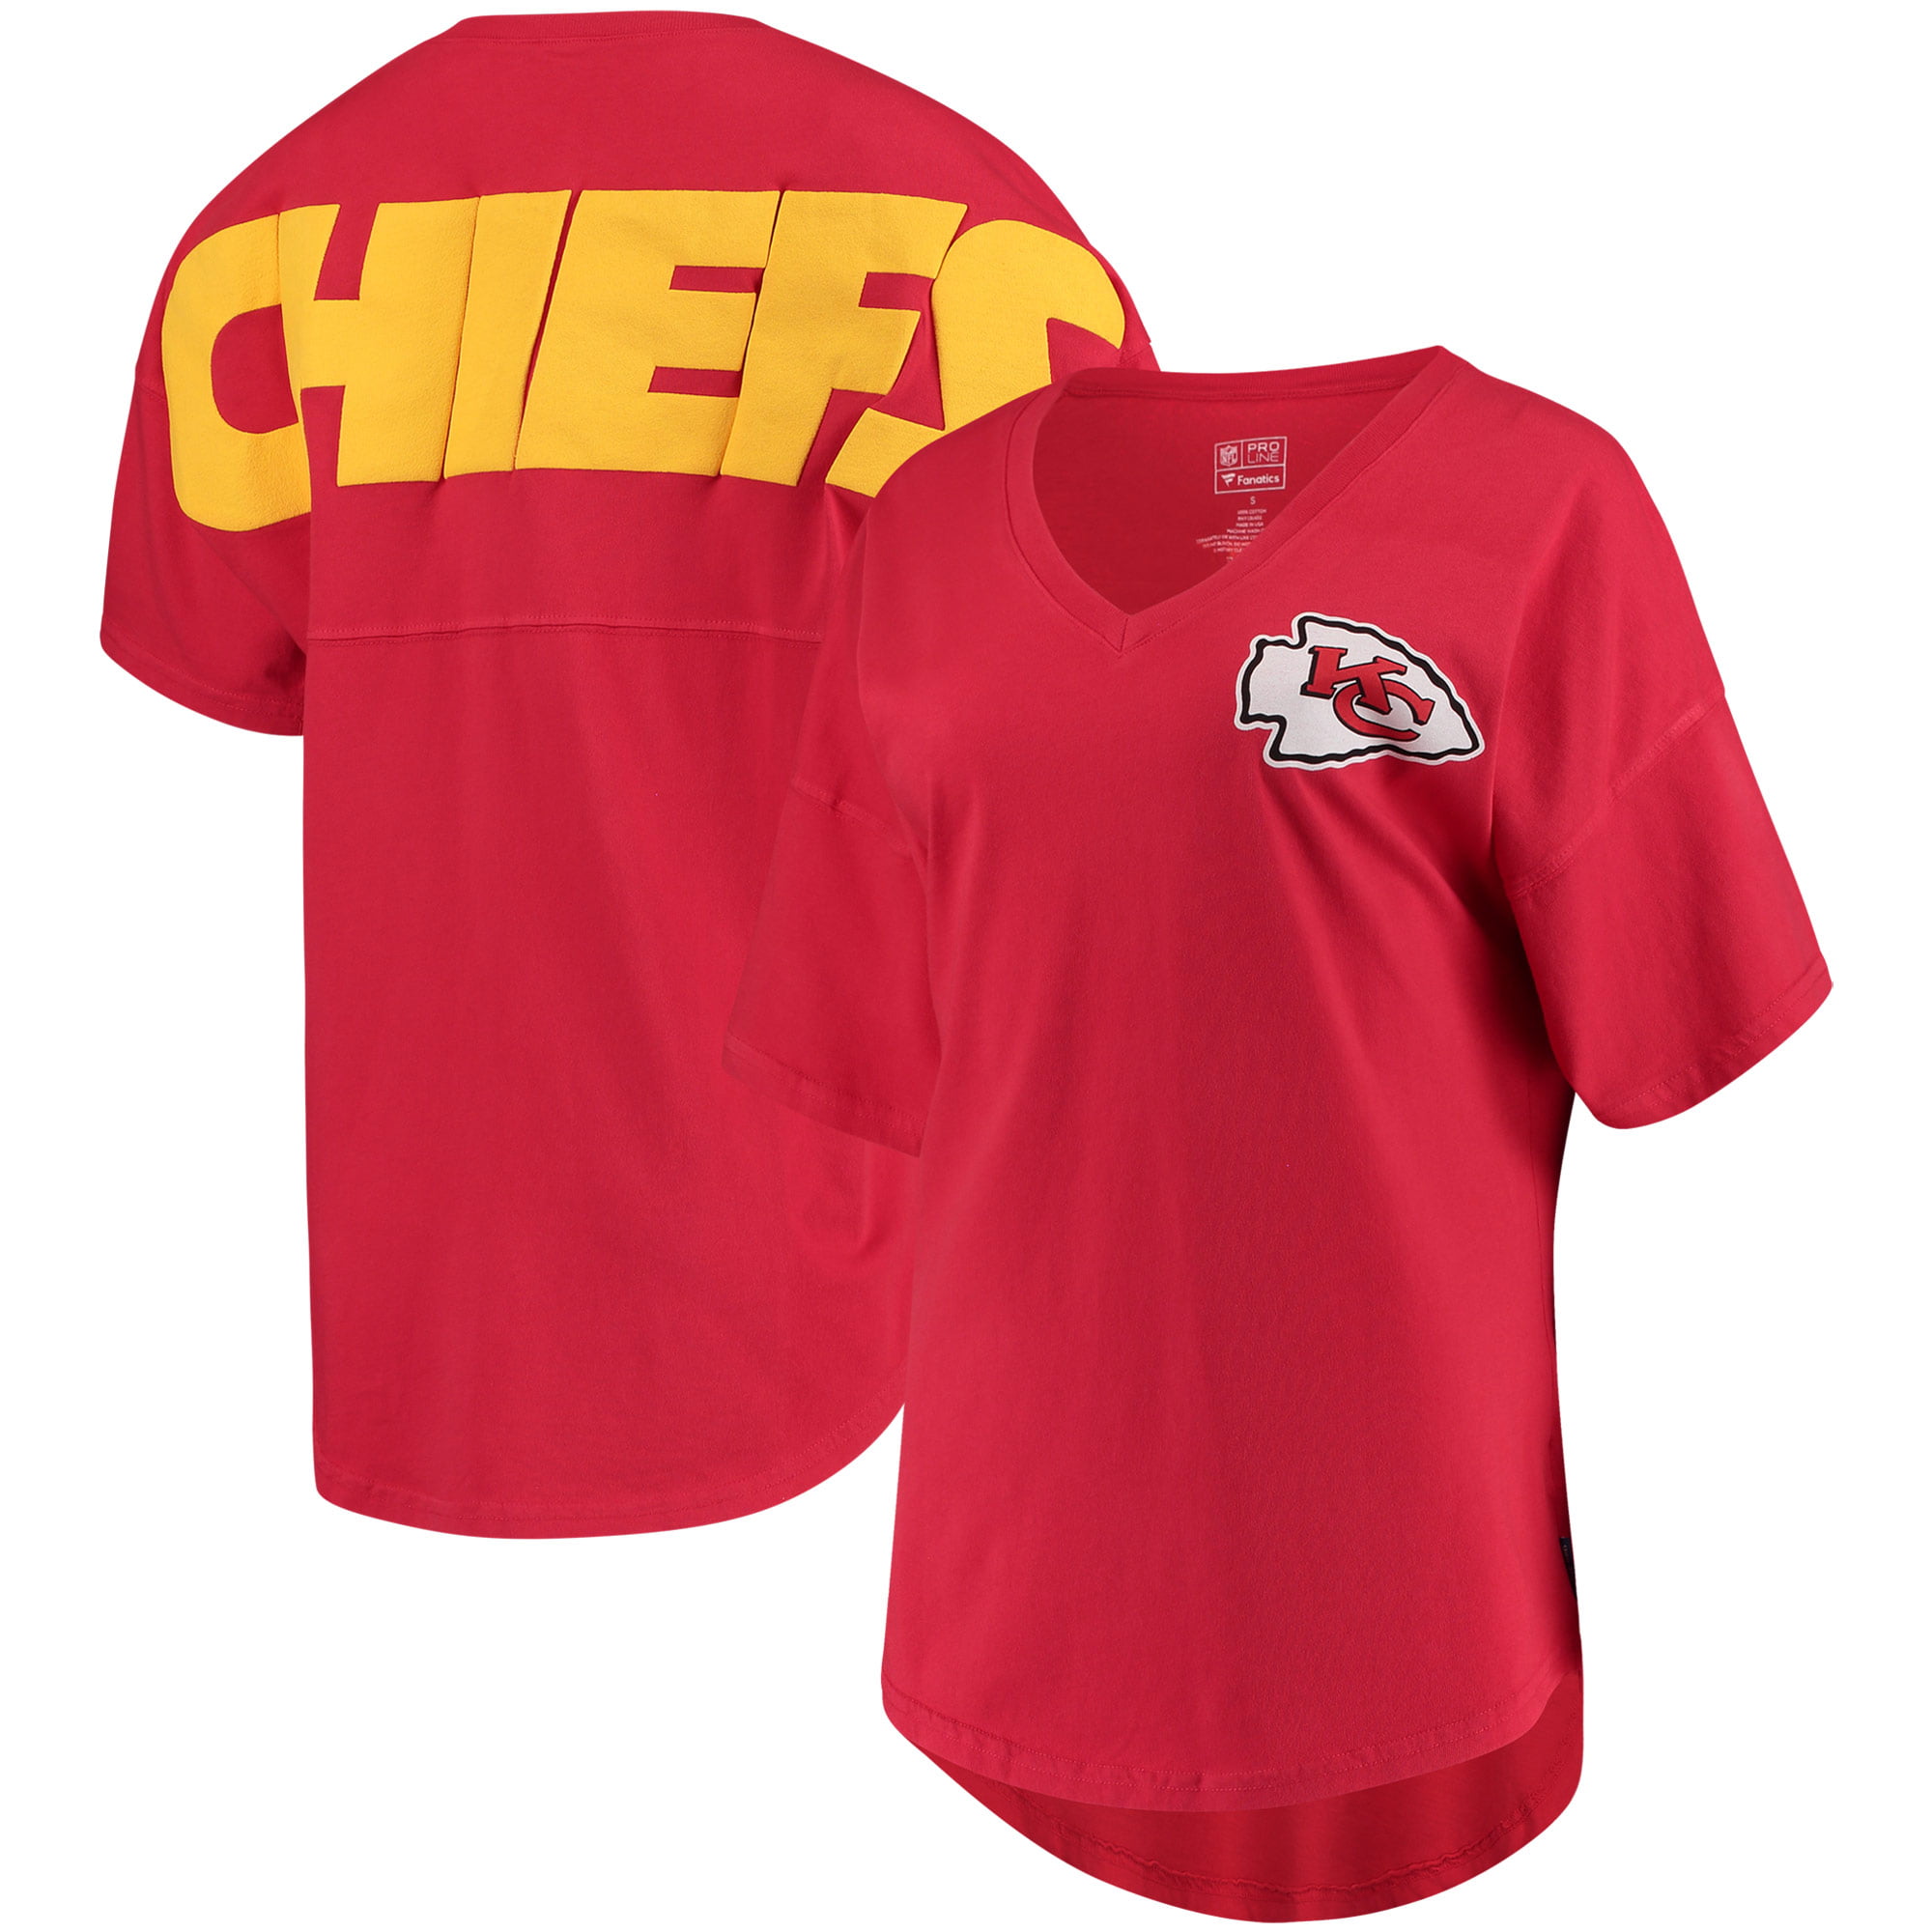 chiefs t shirt jersey